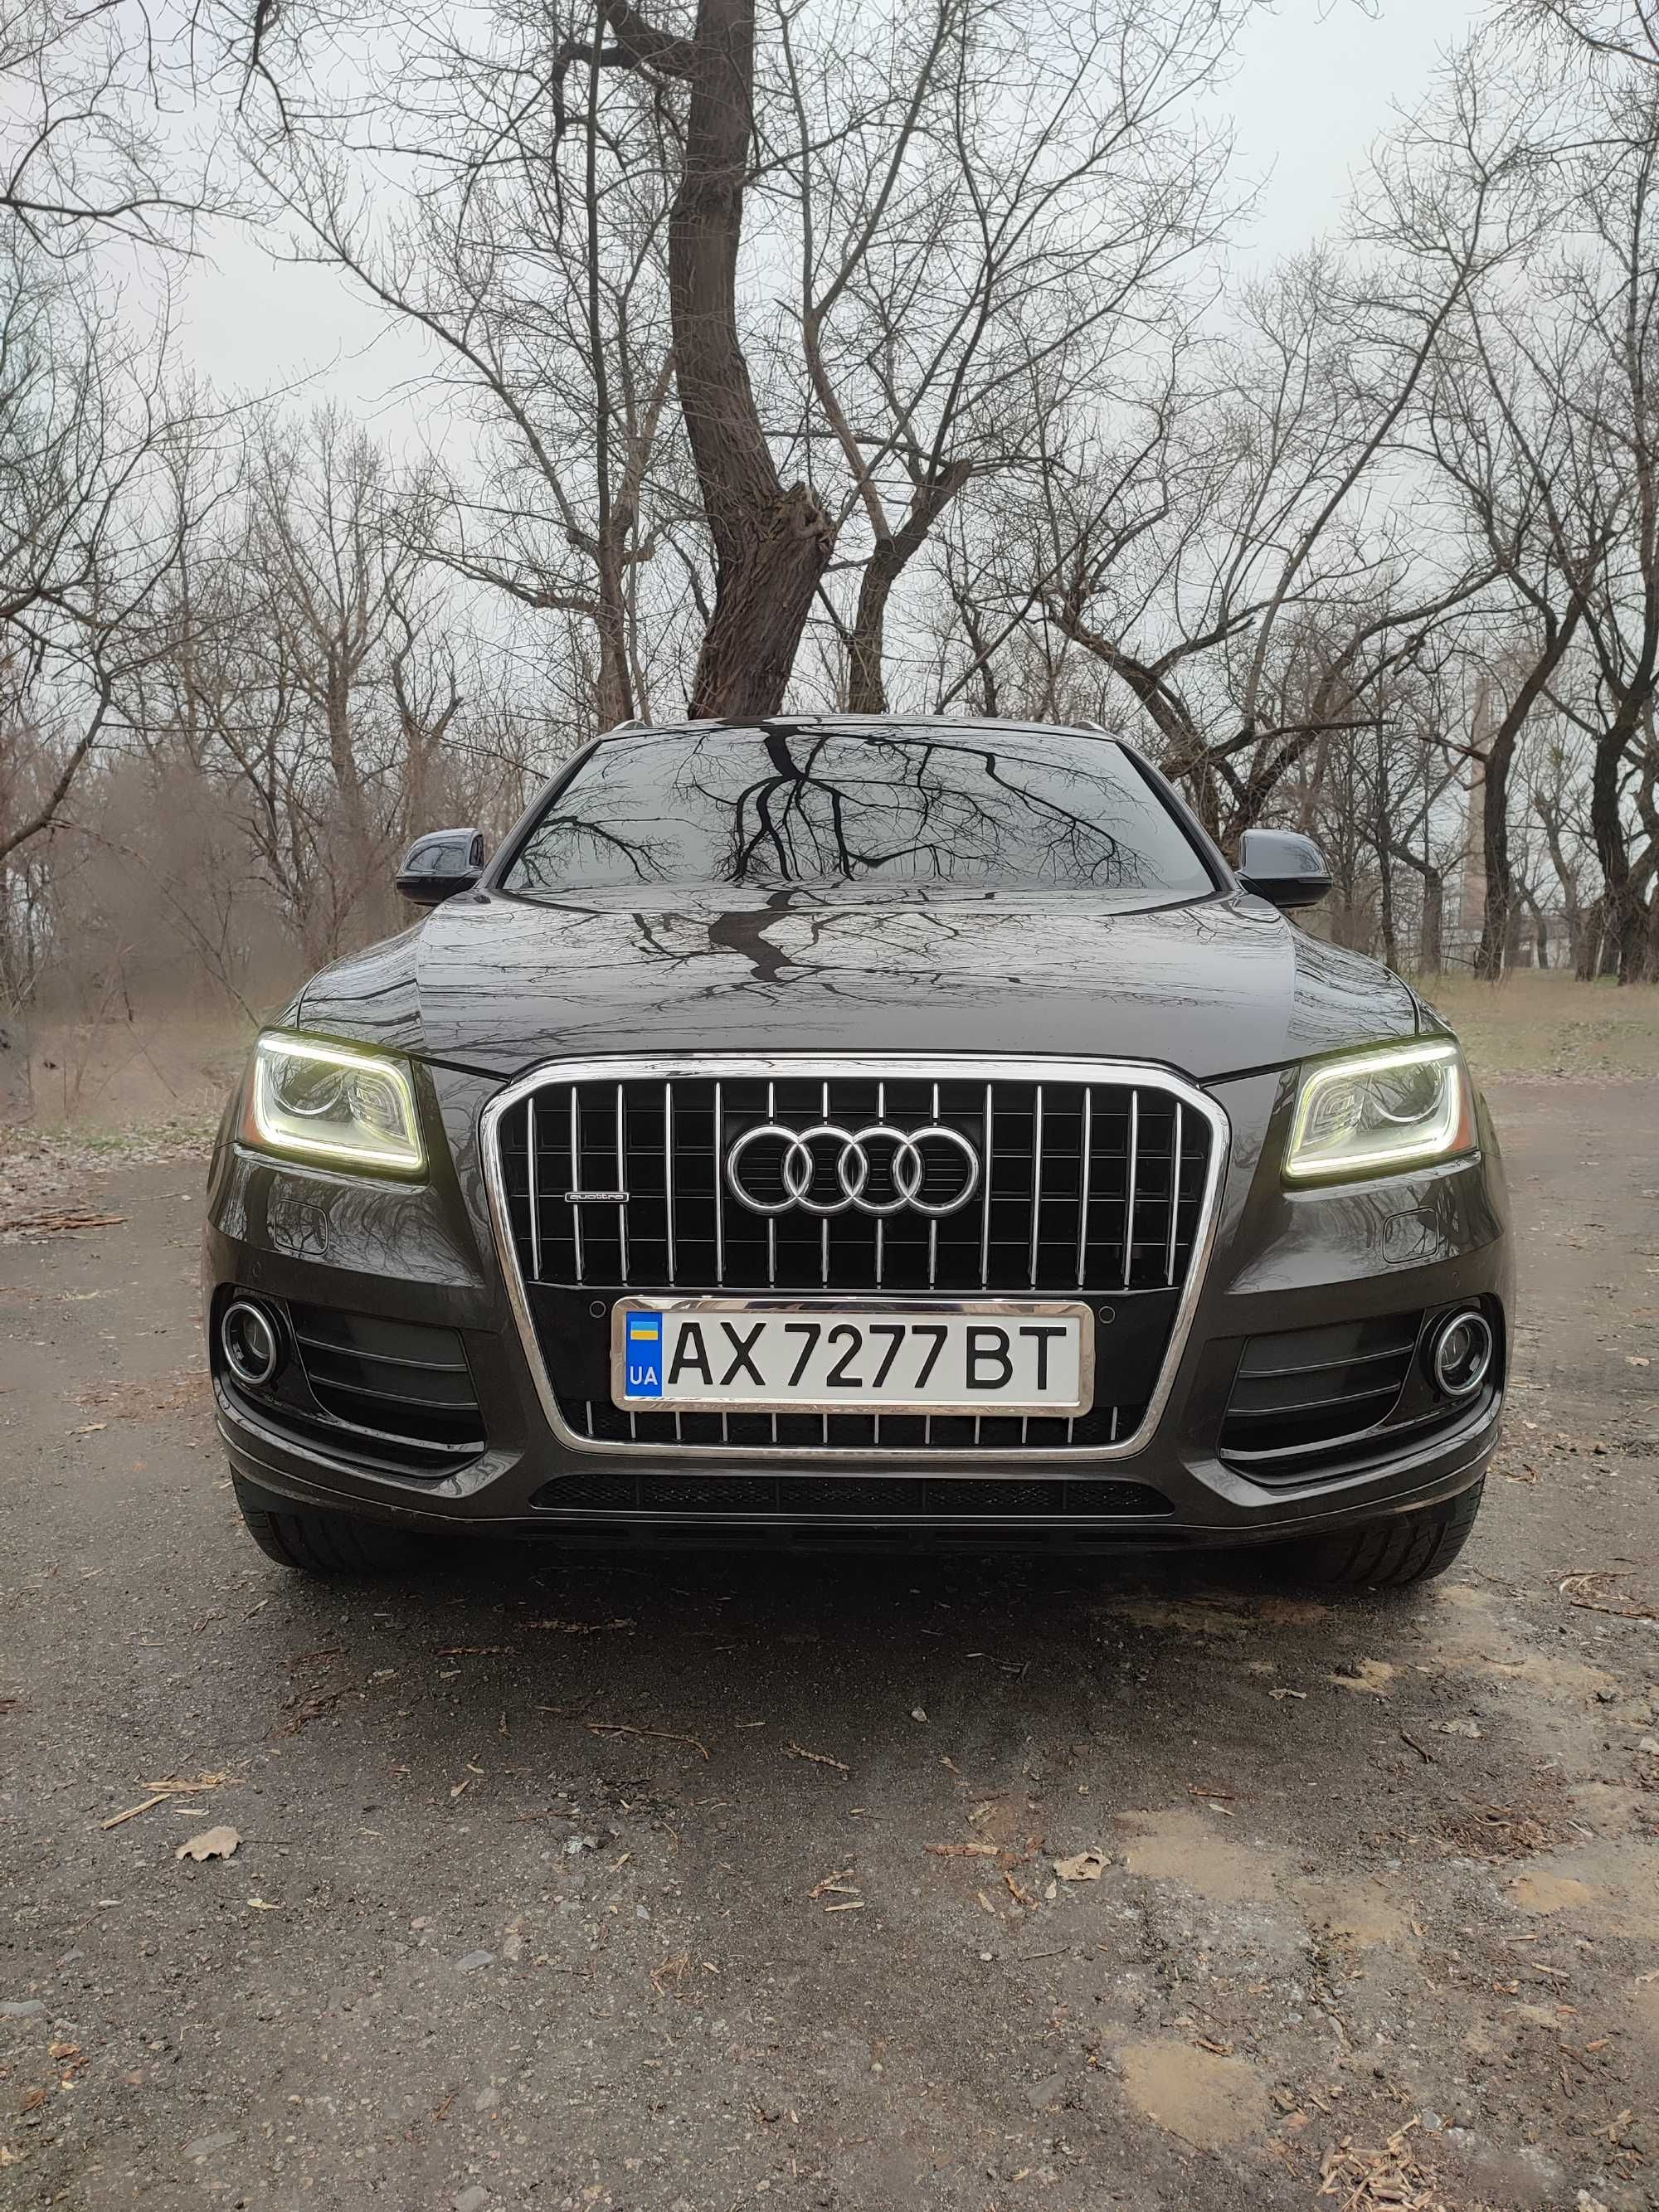 Audi Q5 2015 Premium plus